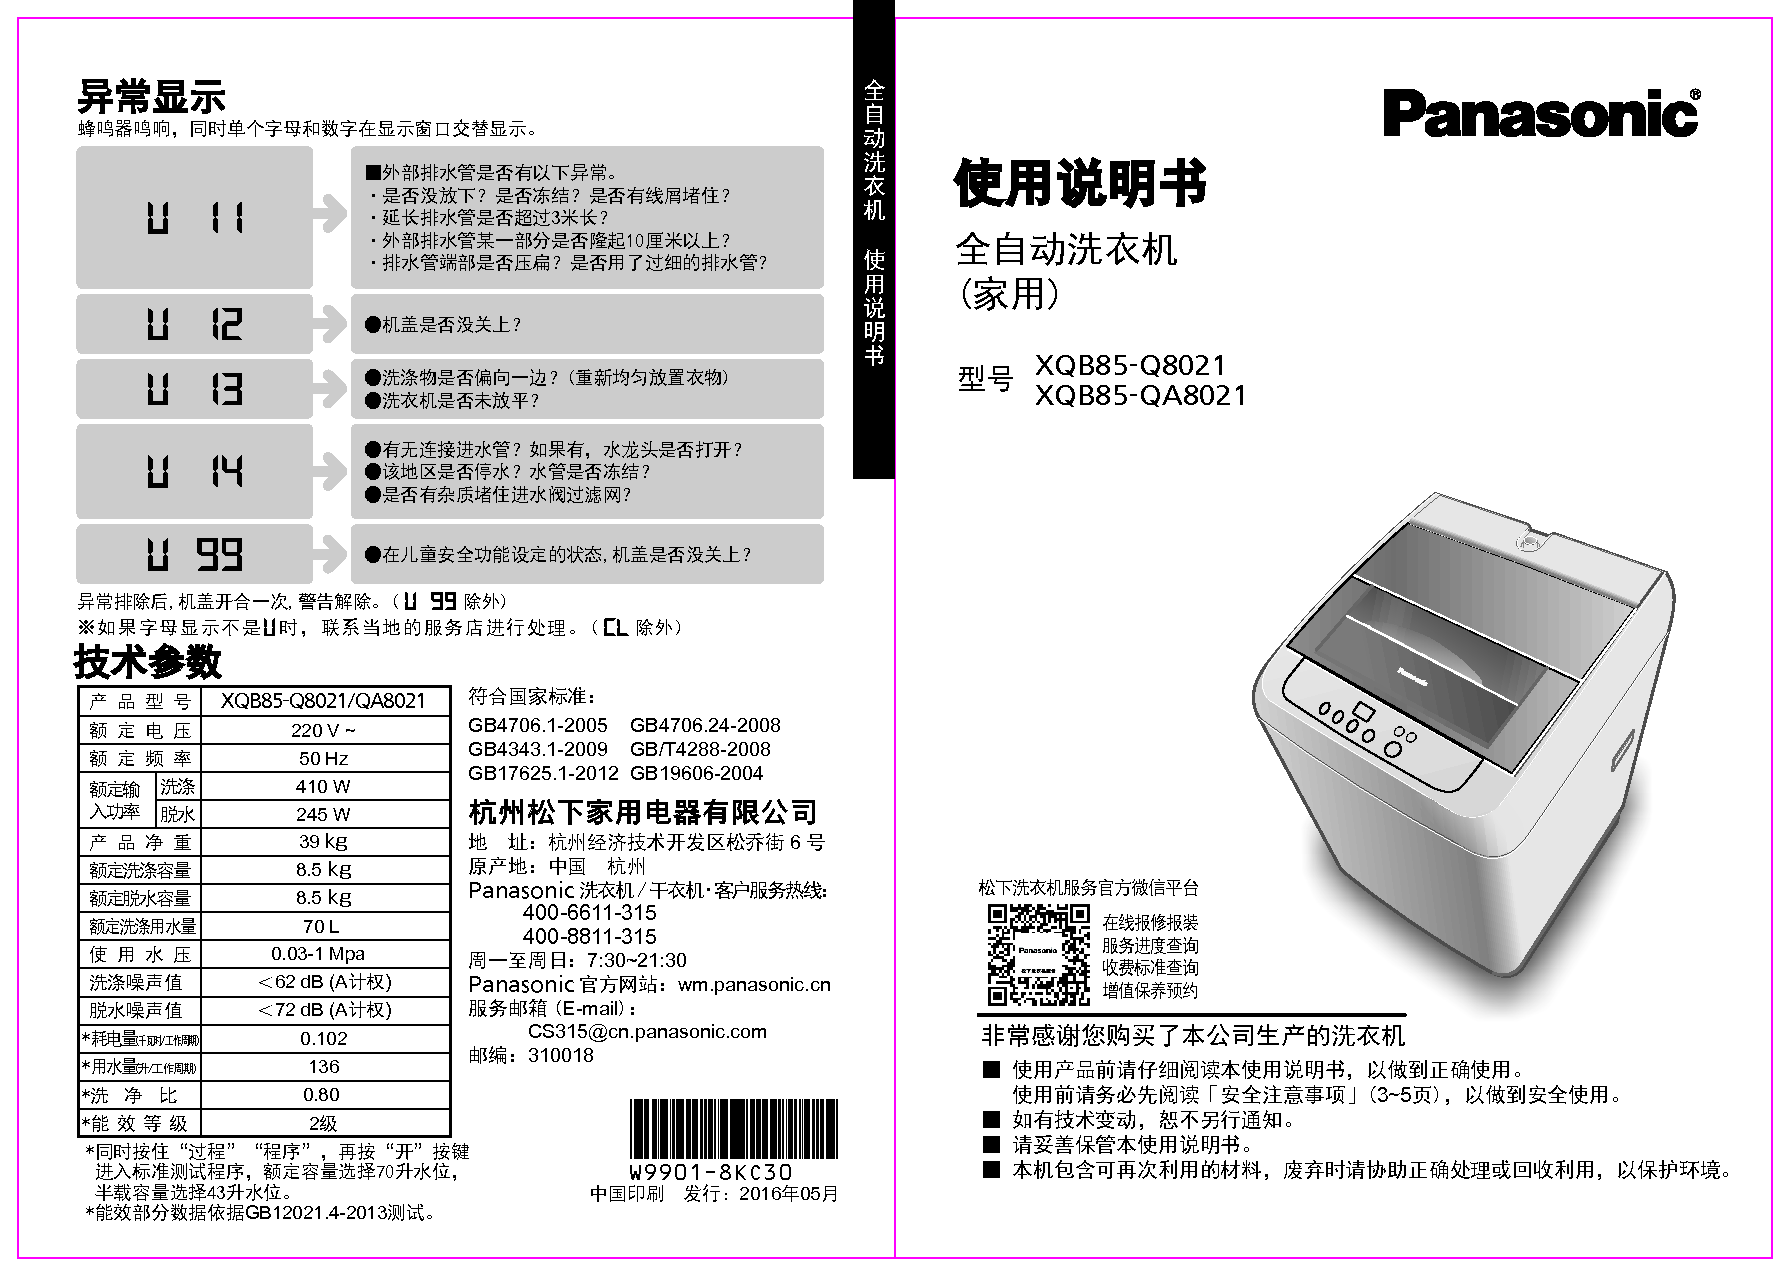 松下 Panasonic XQB85-Q8021 使用说明书 封面